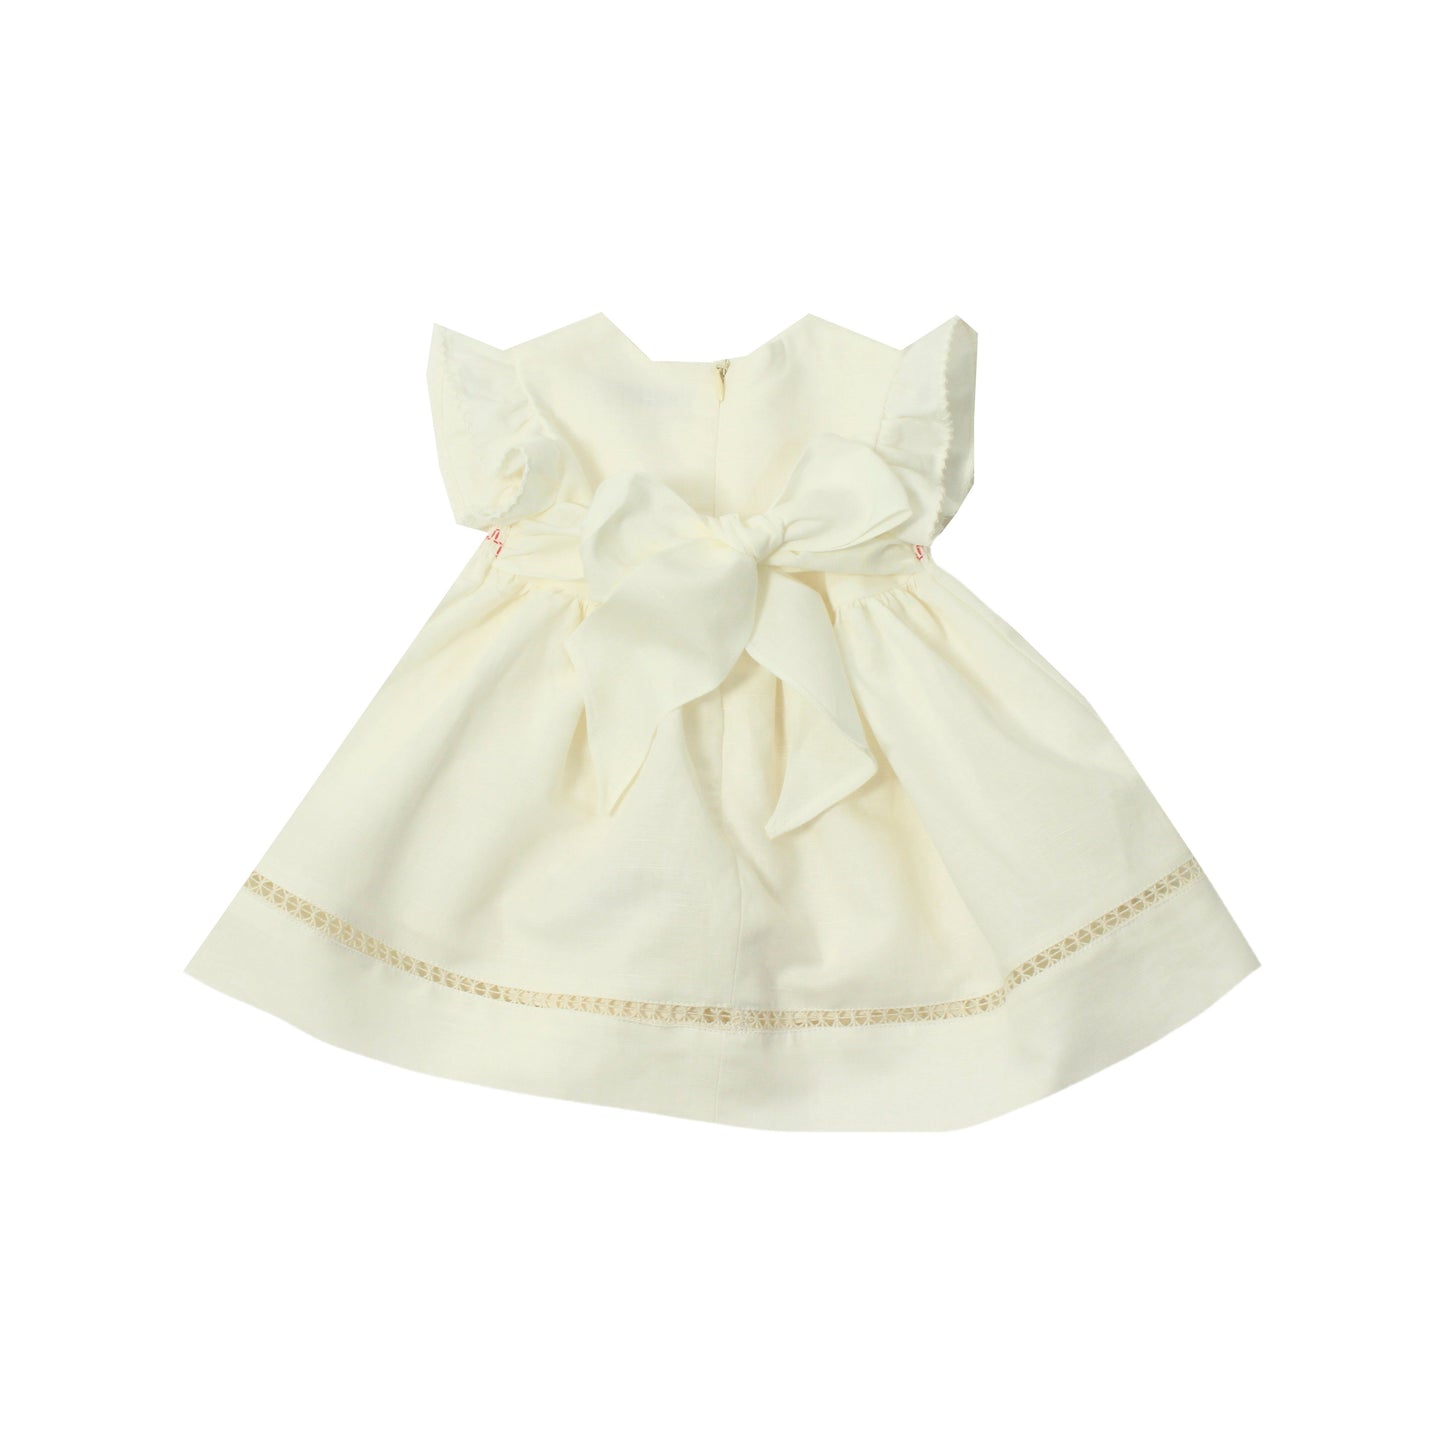 Baby girls cream dress by designer Dr Kid - Adora Childrenswear